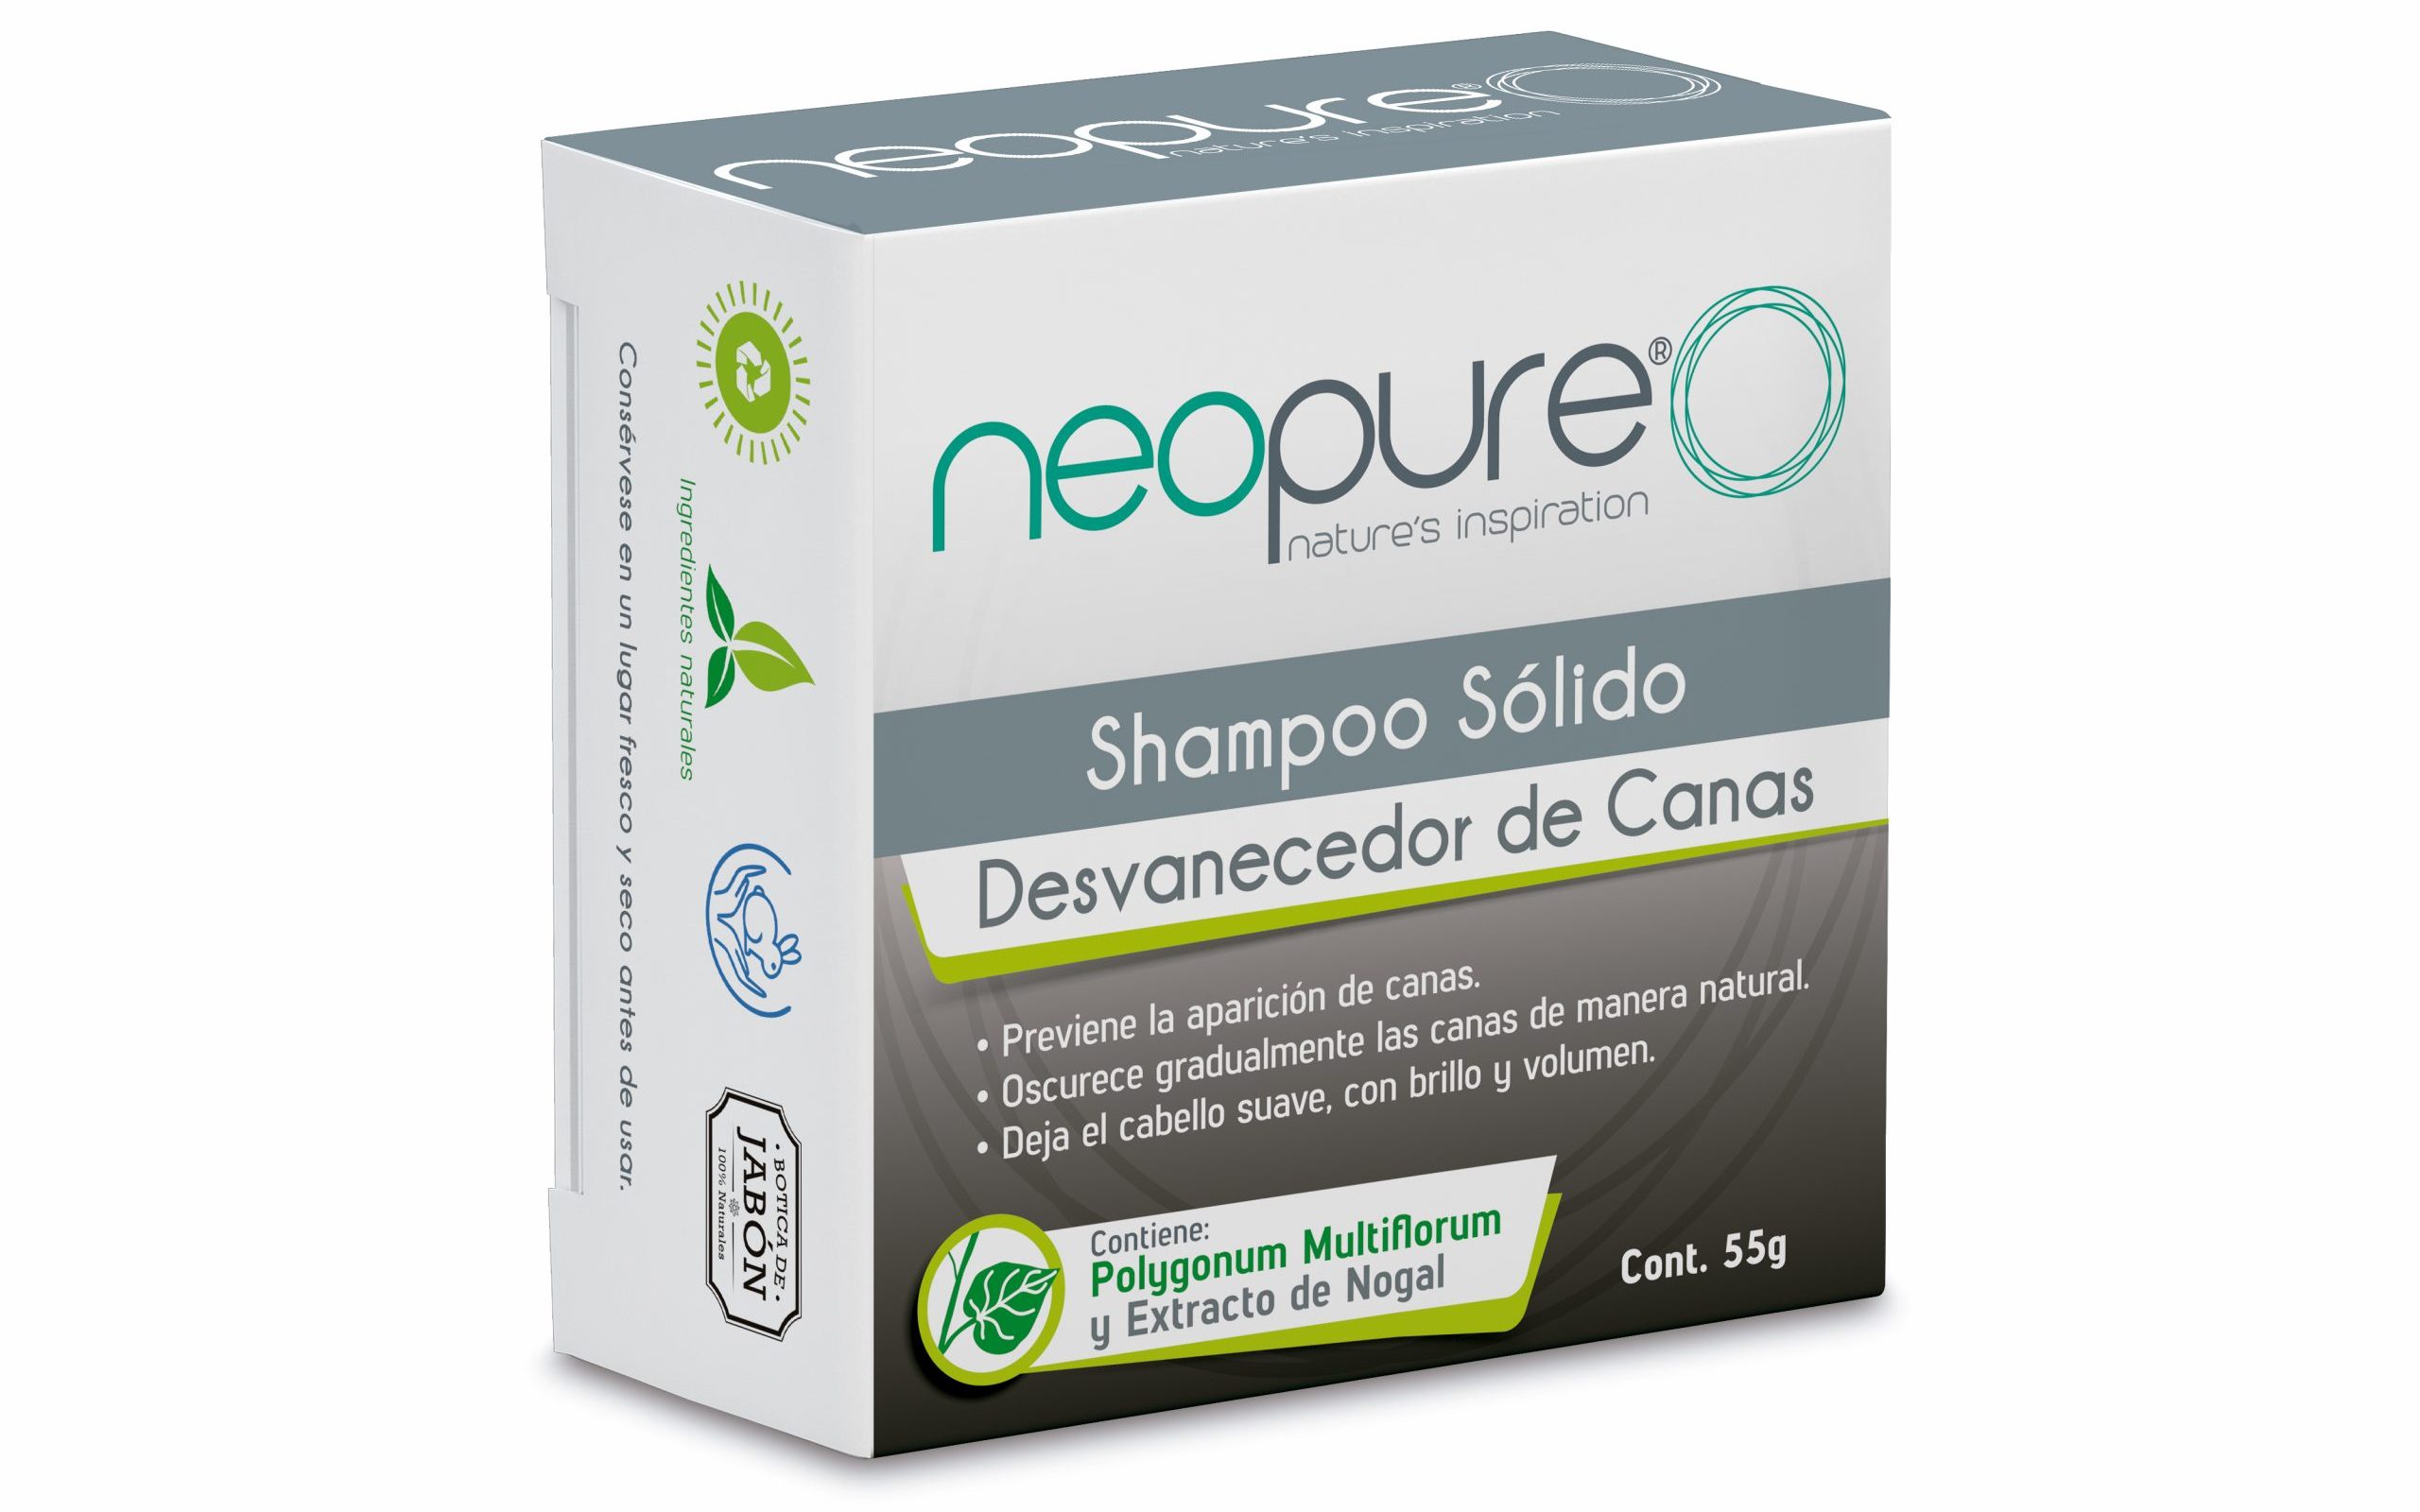 Shampoo Sólido Desvanecedor de Canas Neopure: ¿Qué es y para qué sirve?